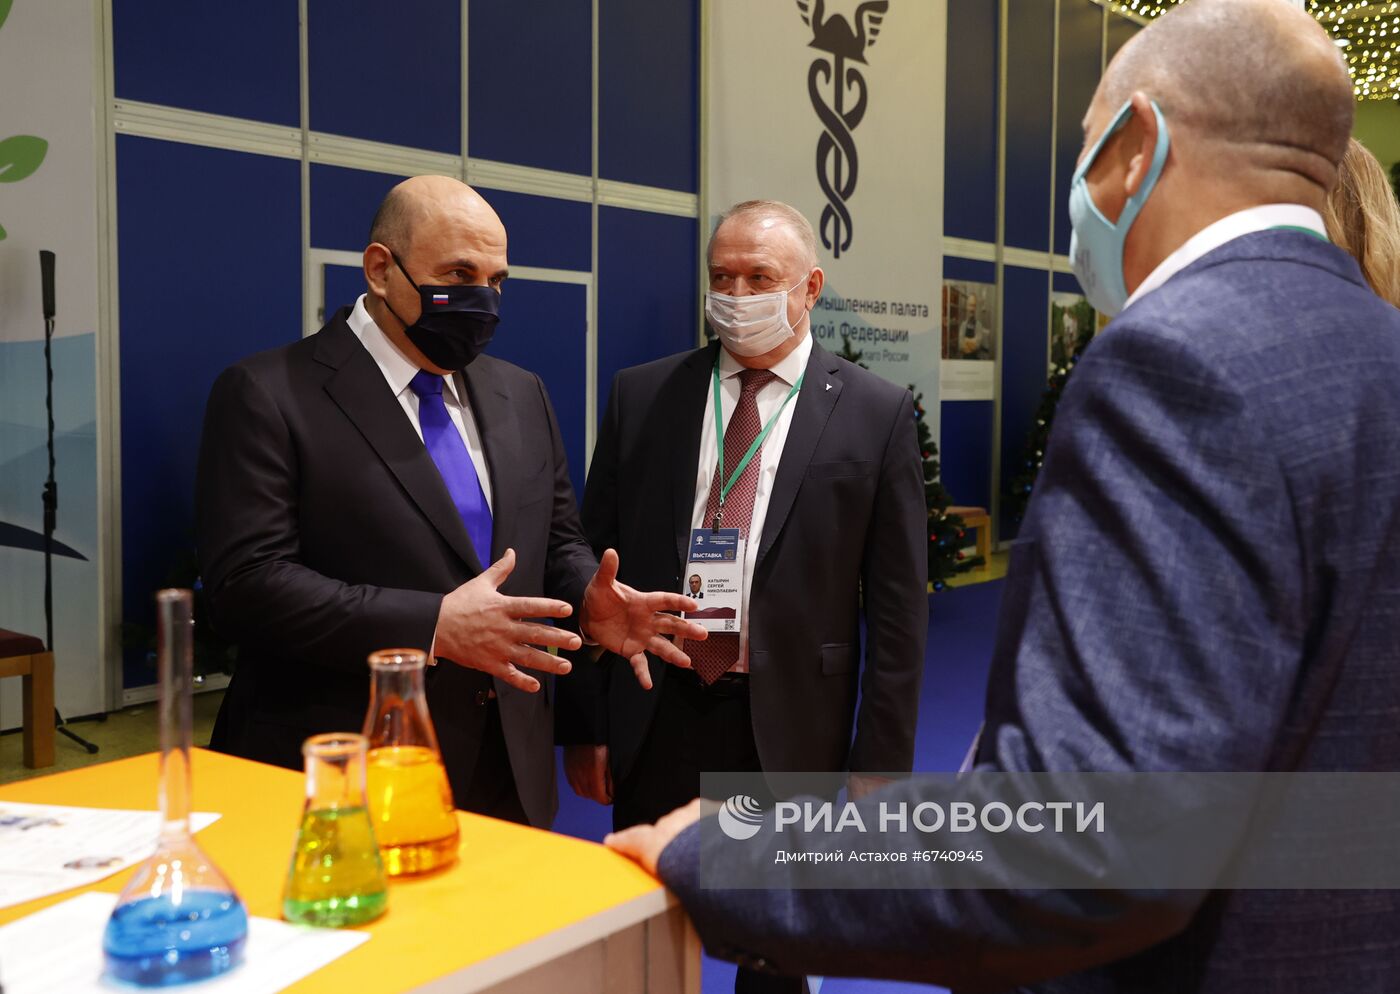 Премьер-министр РФ Михаил Мишустин посетил форум семейного бизнеса "Успешная семья - успешная Россия!"